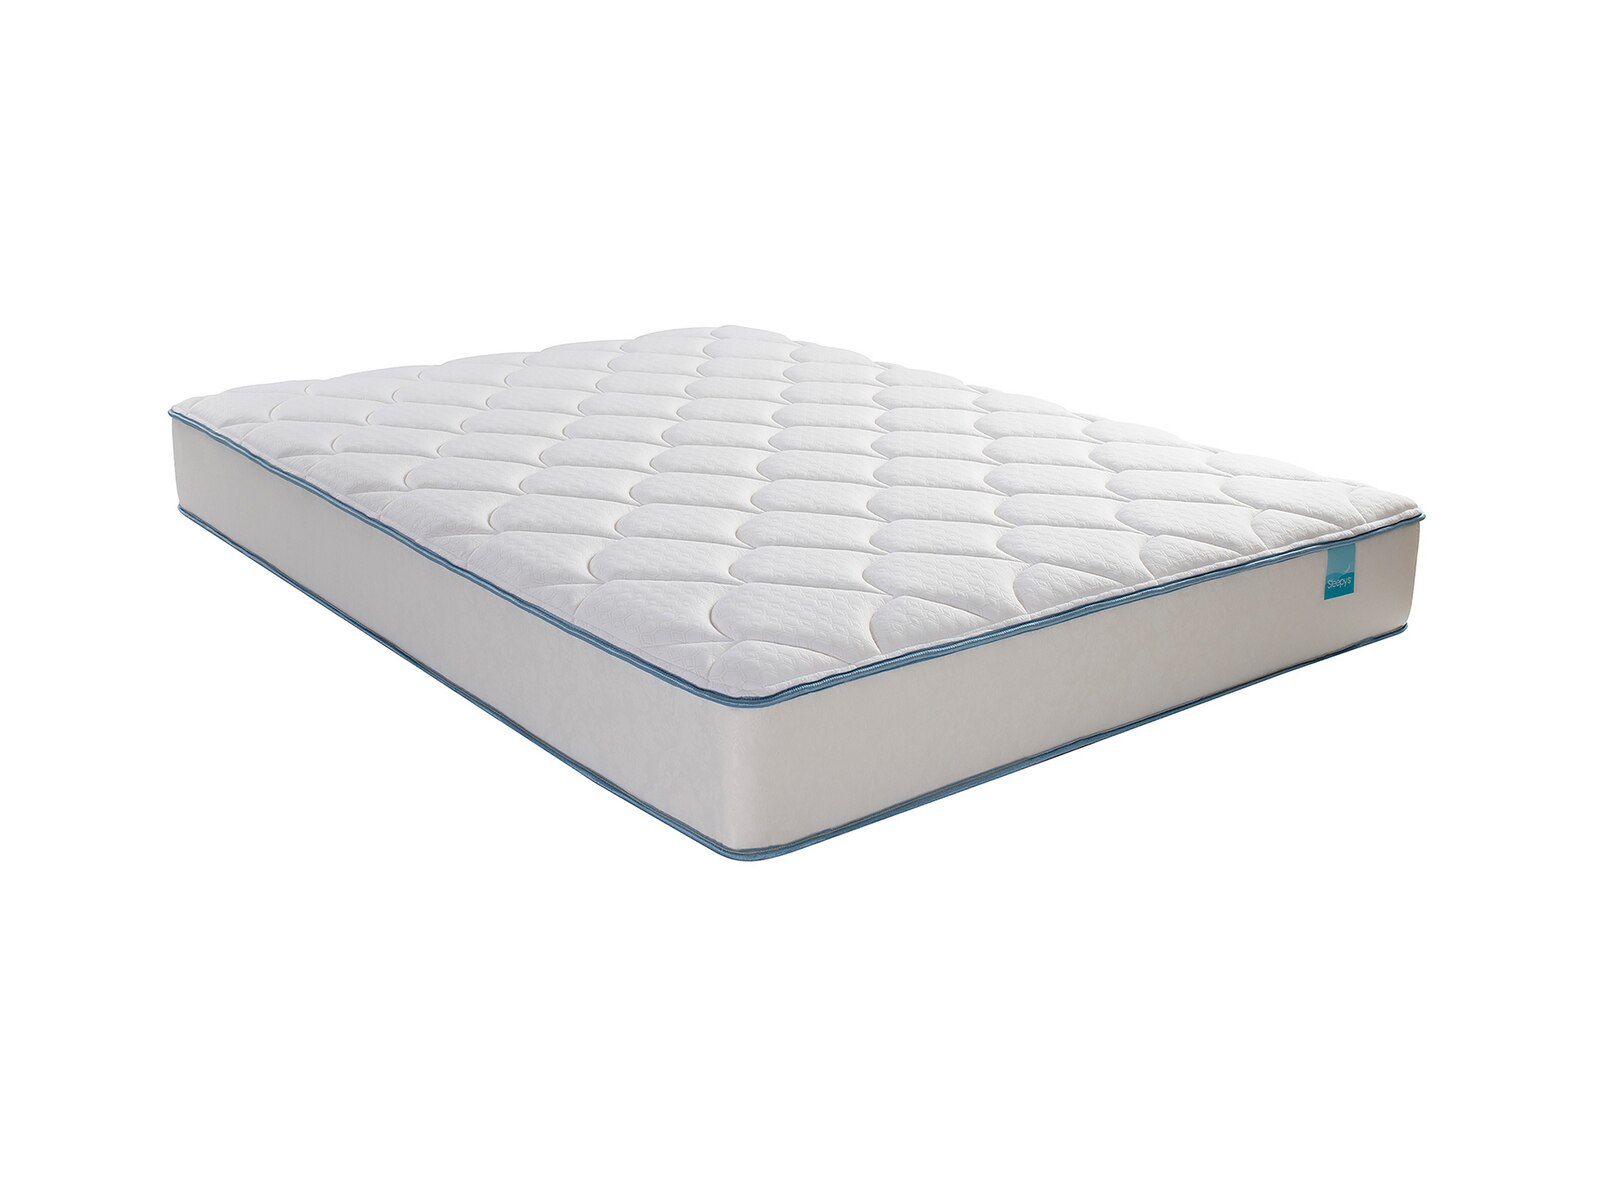 sleepy's 10 medium quilted foam mattress reviews